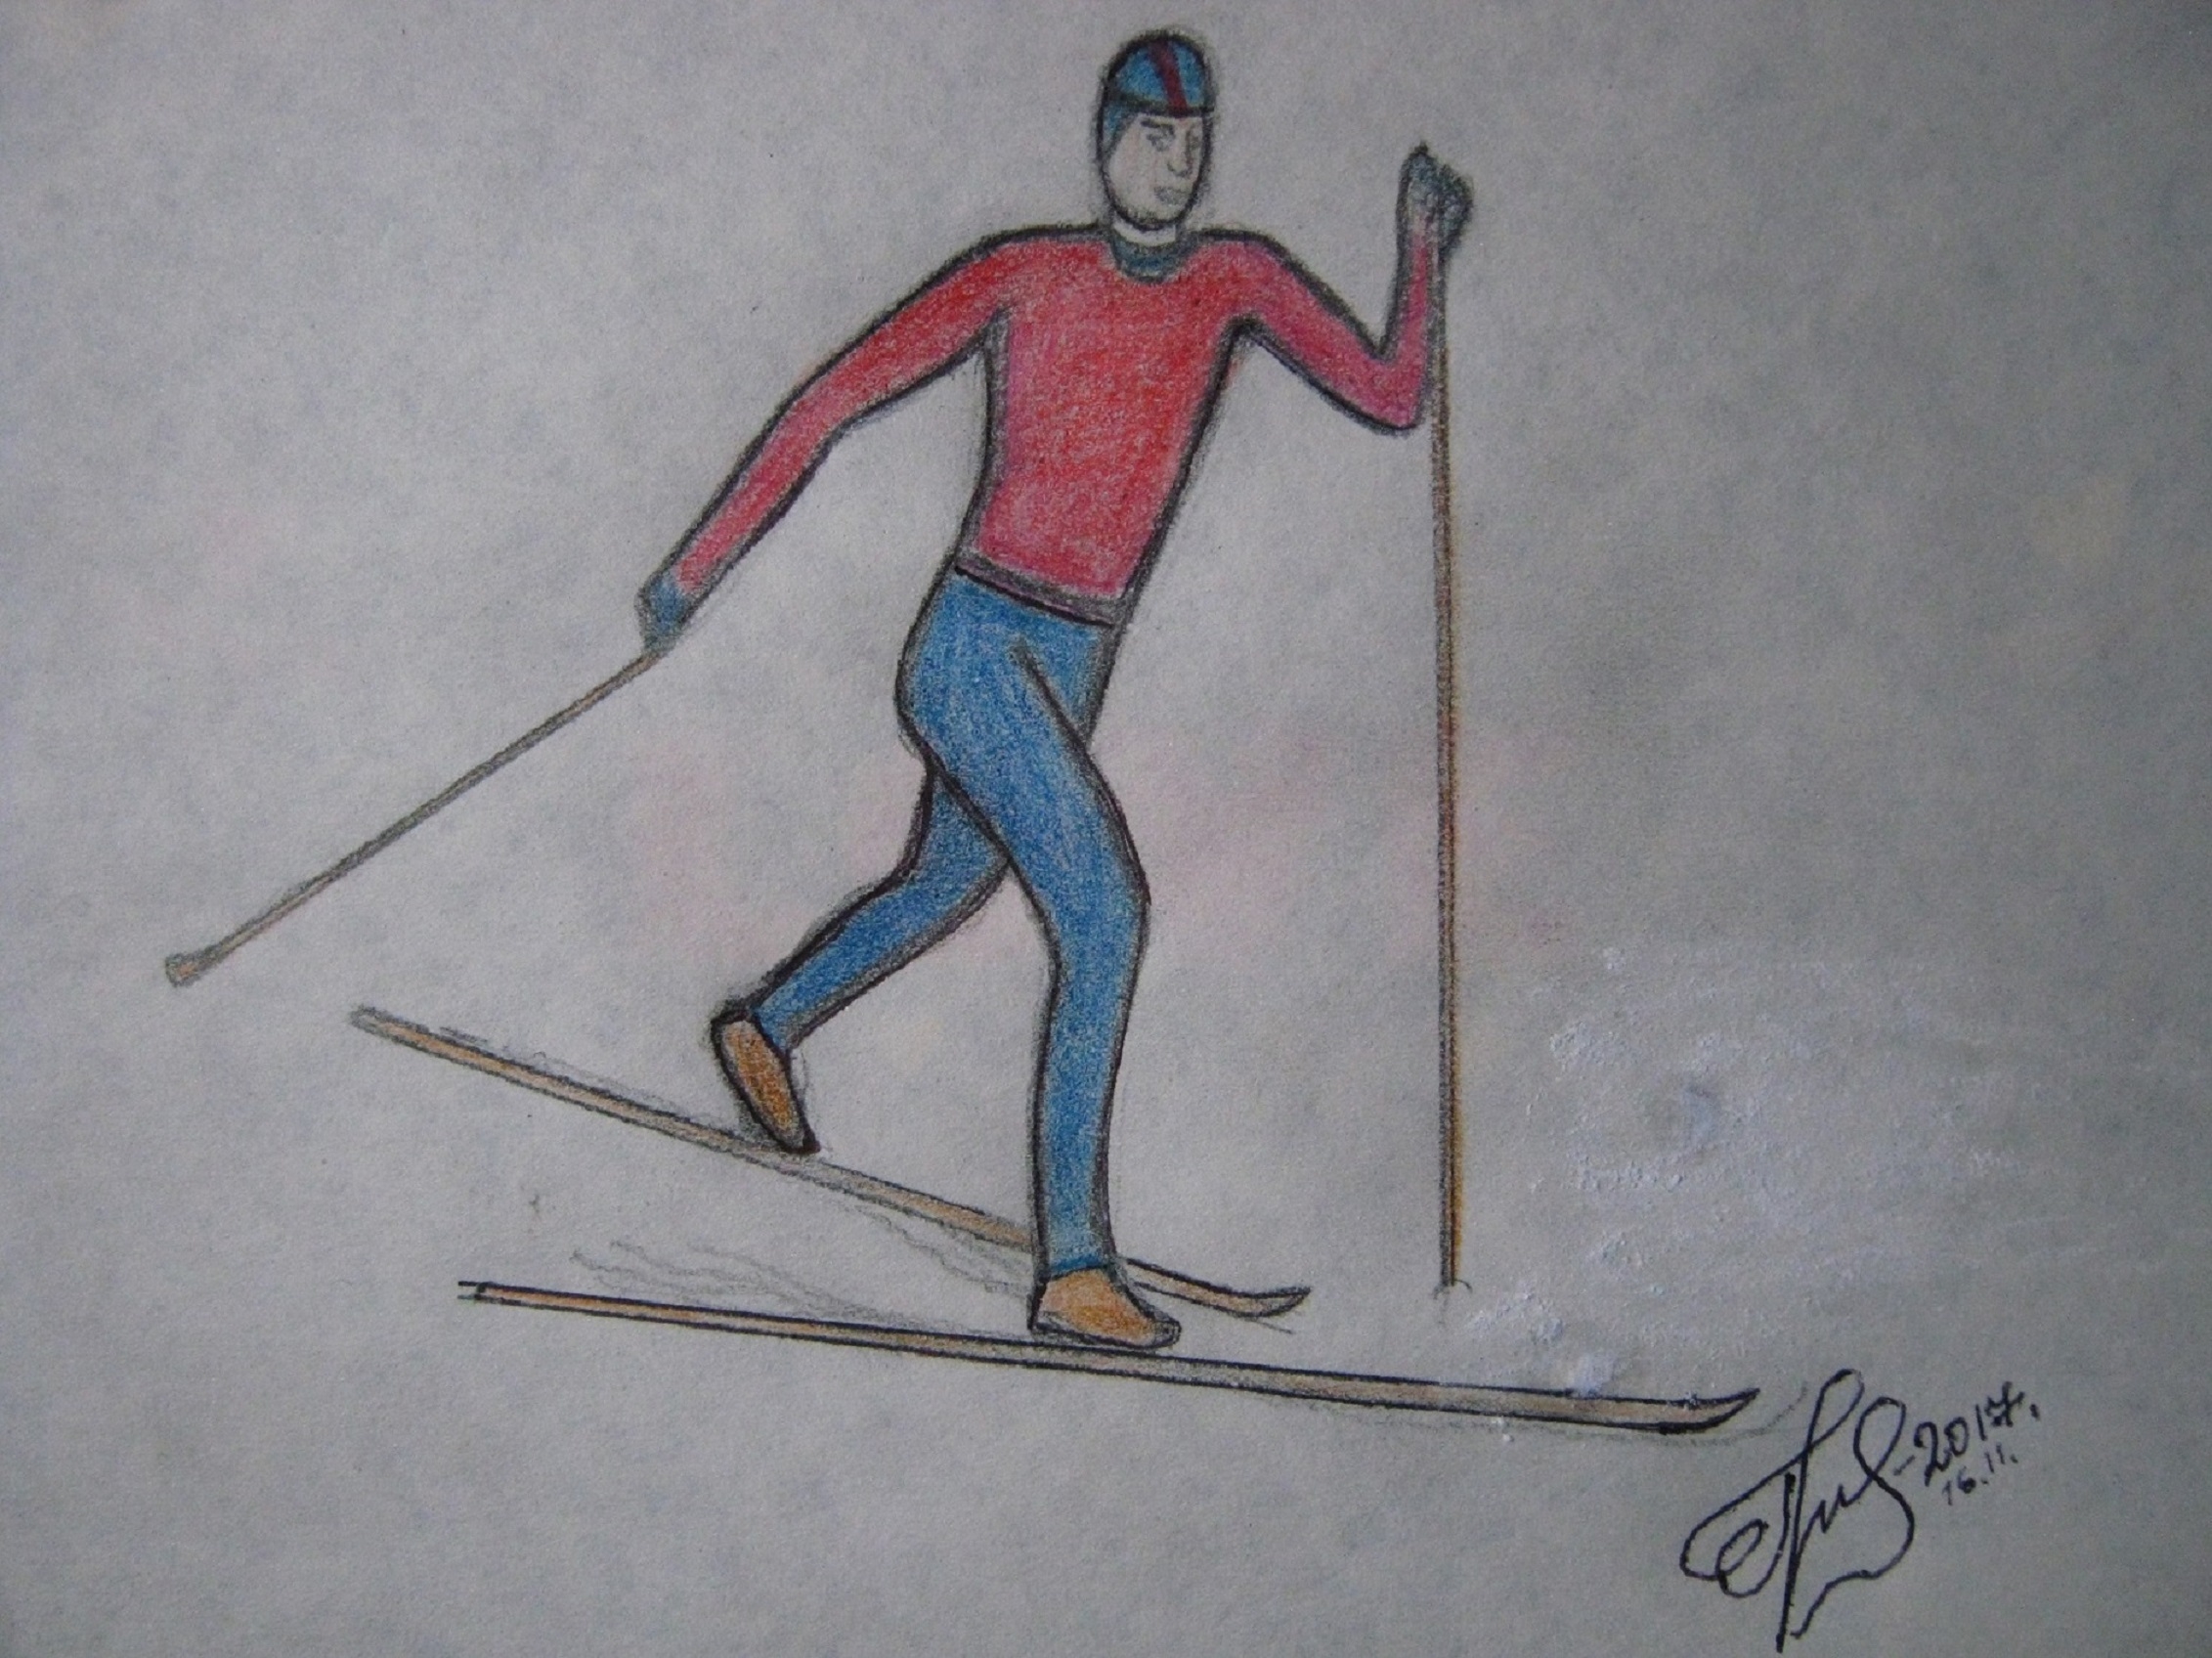 Лыжник рисунок карандашом